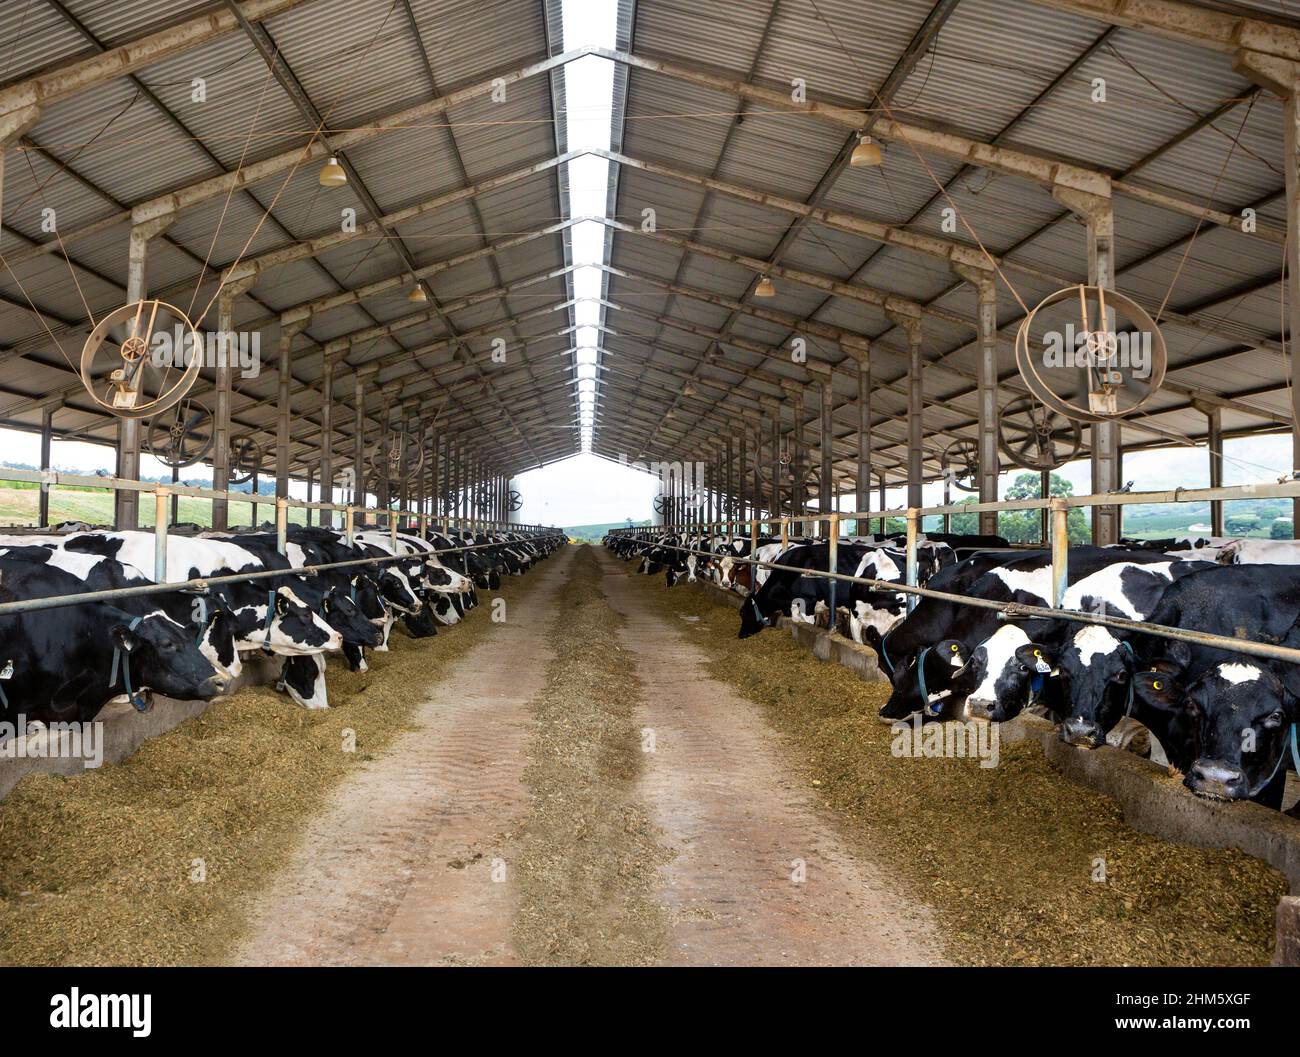 Vaches laitières mangeant du foin dans un abri de vache moderne dans une ferme de bétail de vache Holstein. Concept de l'agriculture, du bien-être des animaux, de l'industrie laitière, de l'alimentation, de l'élevage de bétail. Banque D'Images